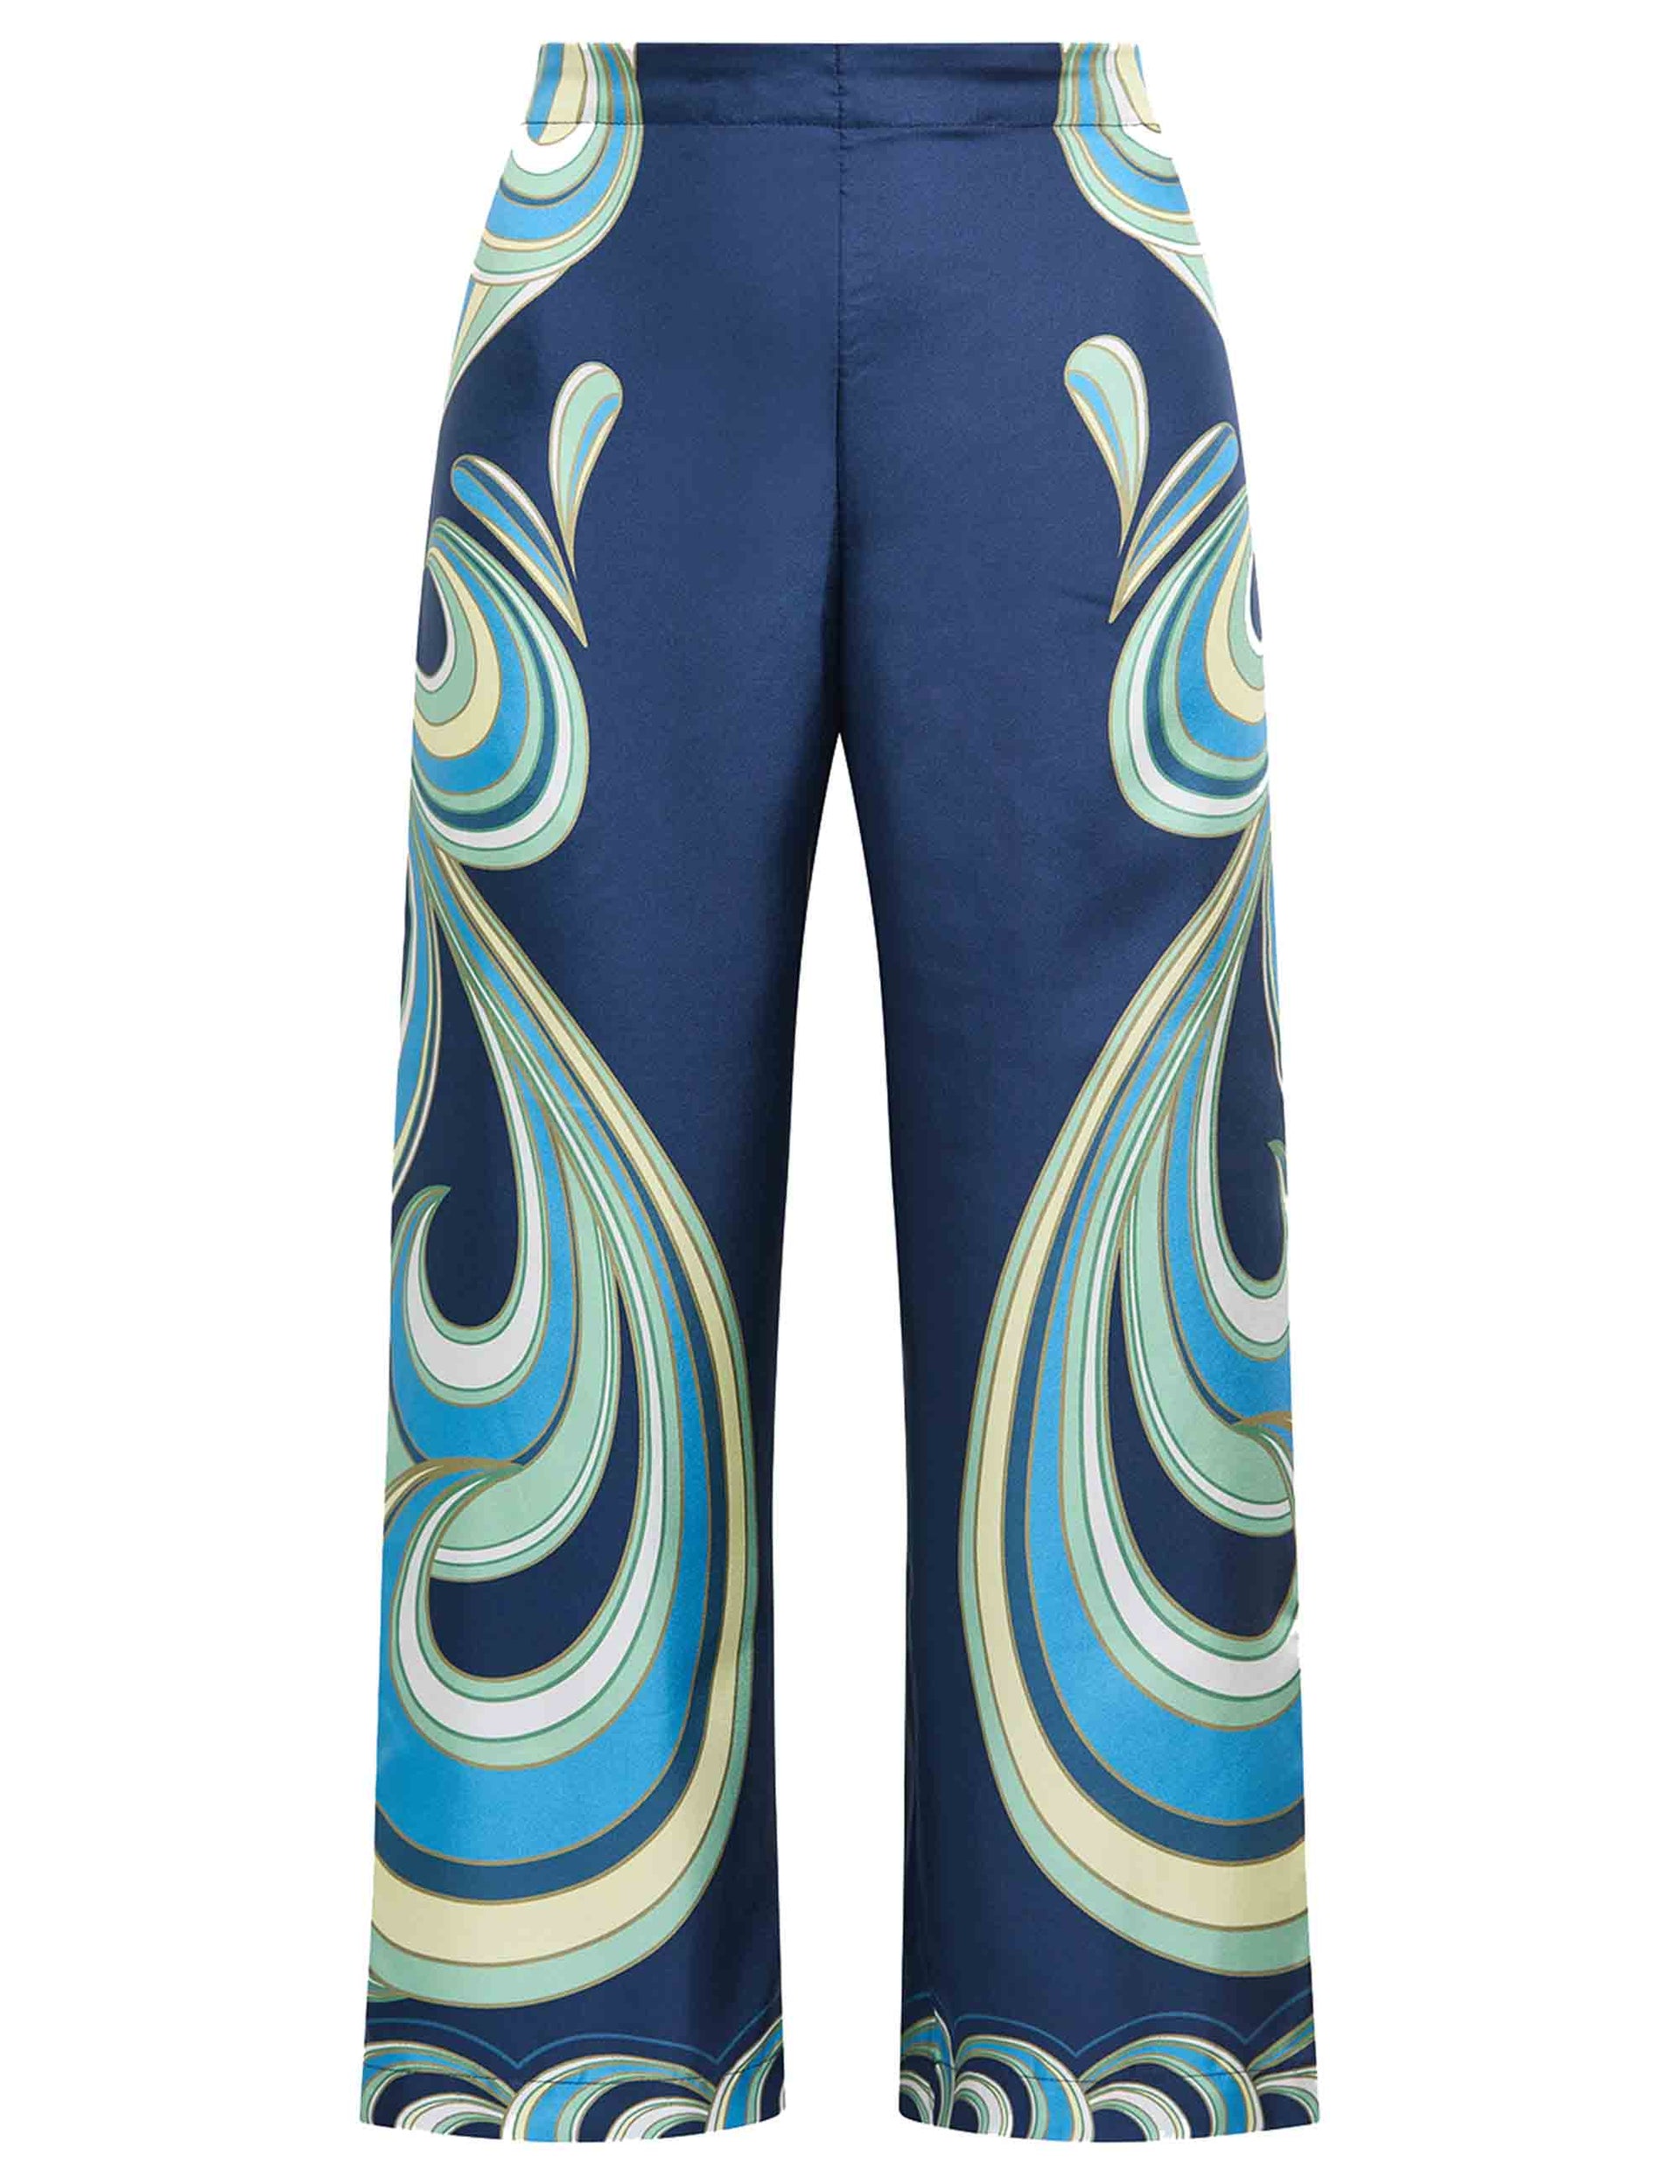 Pantaloni donna Collection Print in seta blu stampata a gamba larga